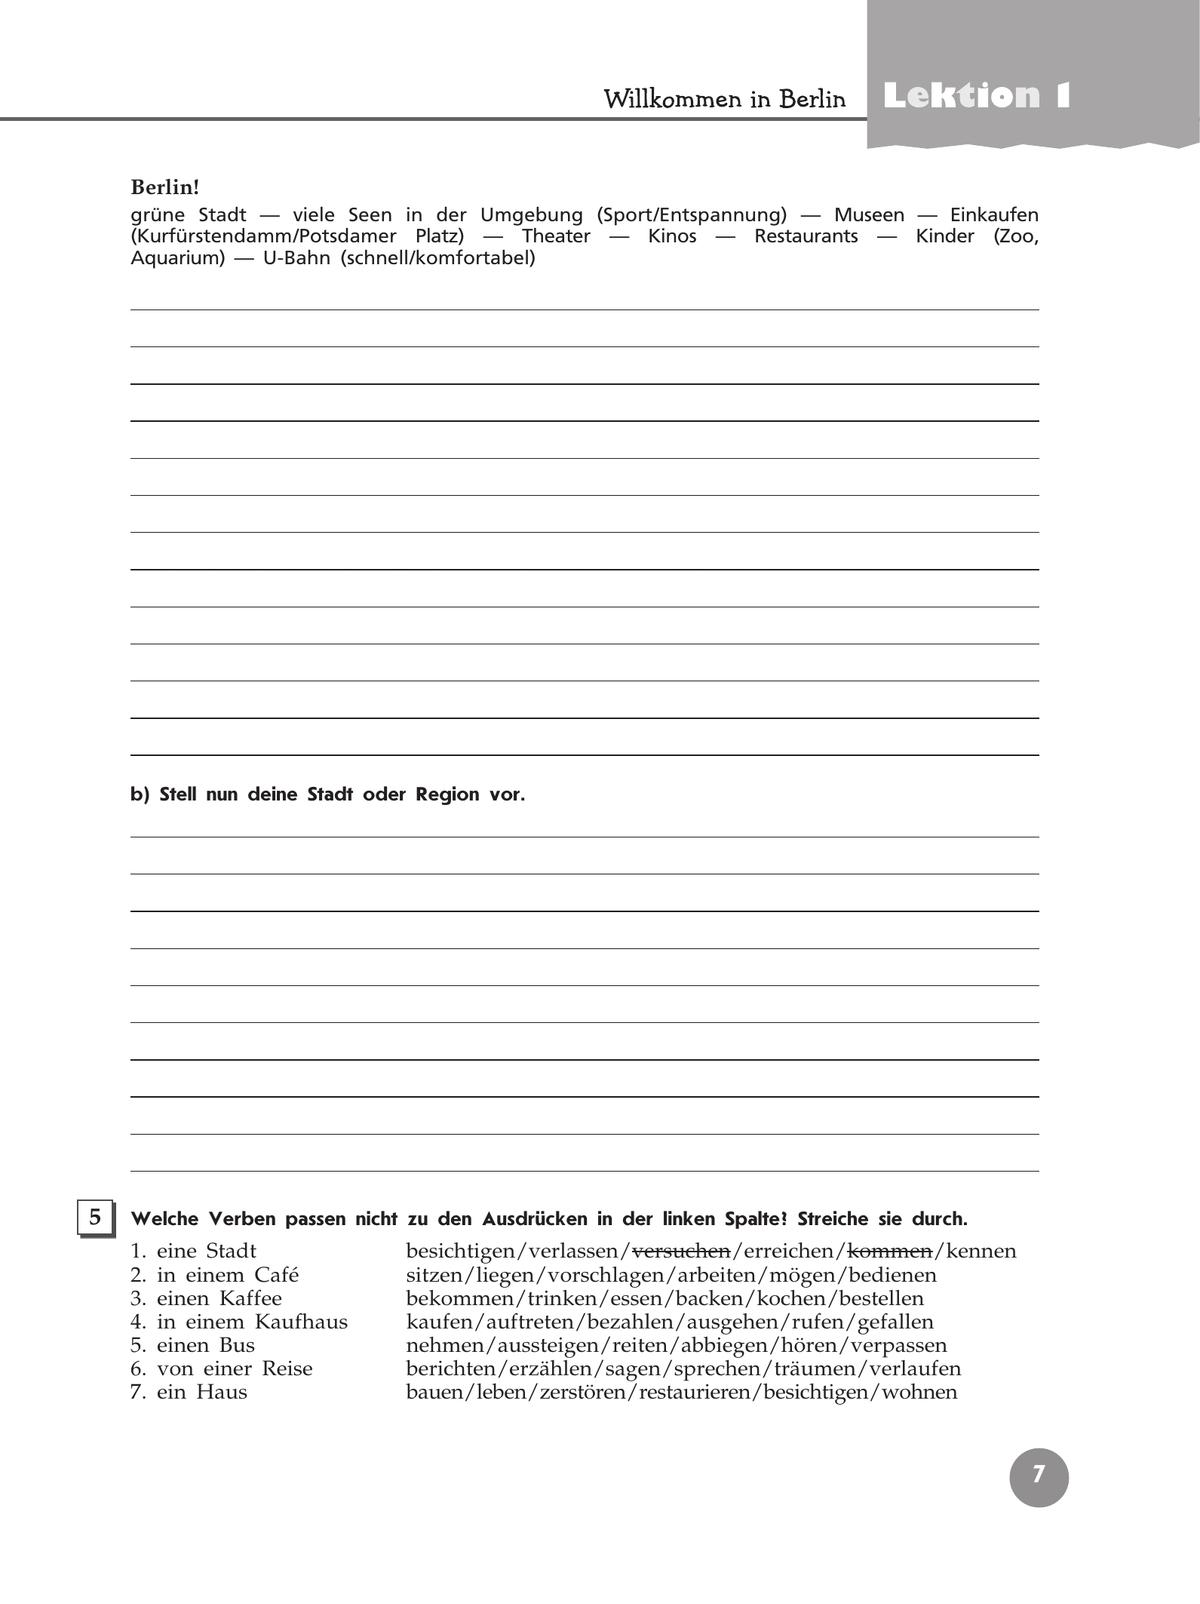 Немецкий язык. Рабочая тетрадь. 9 класс 8